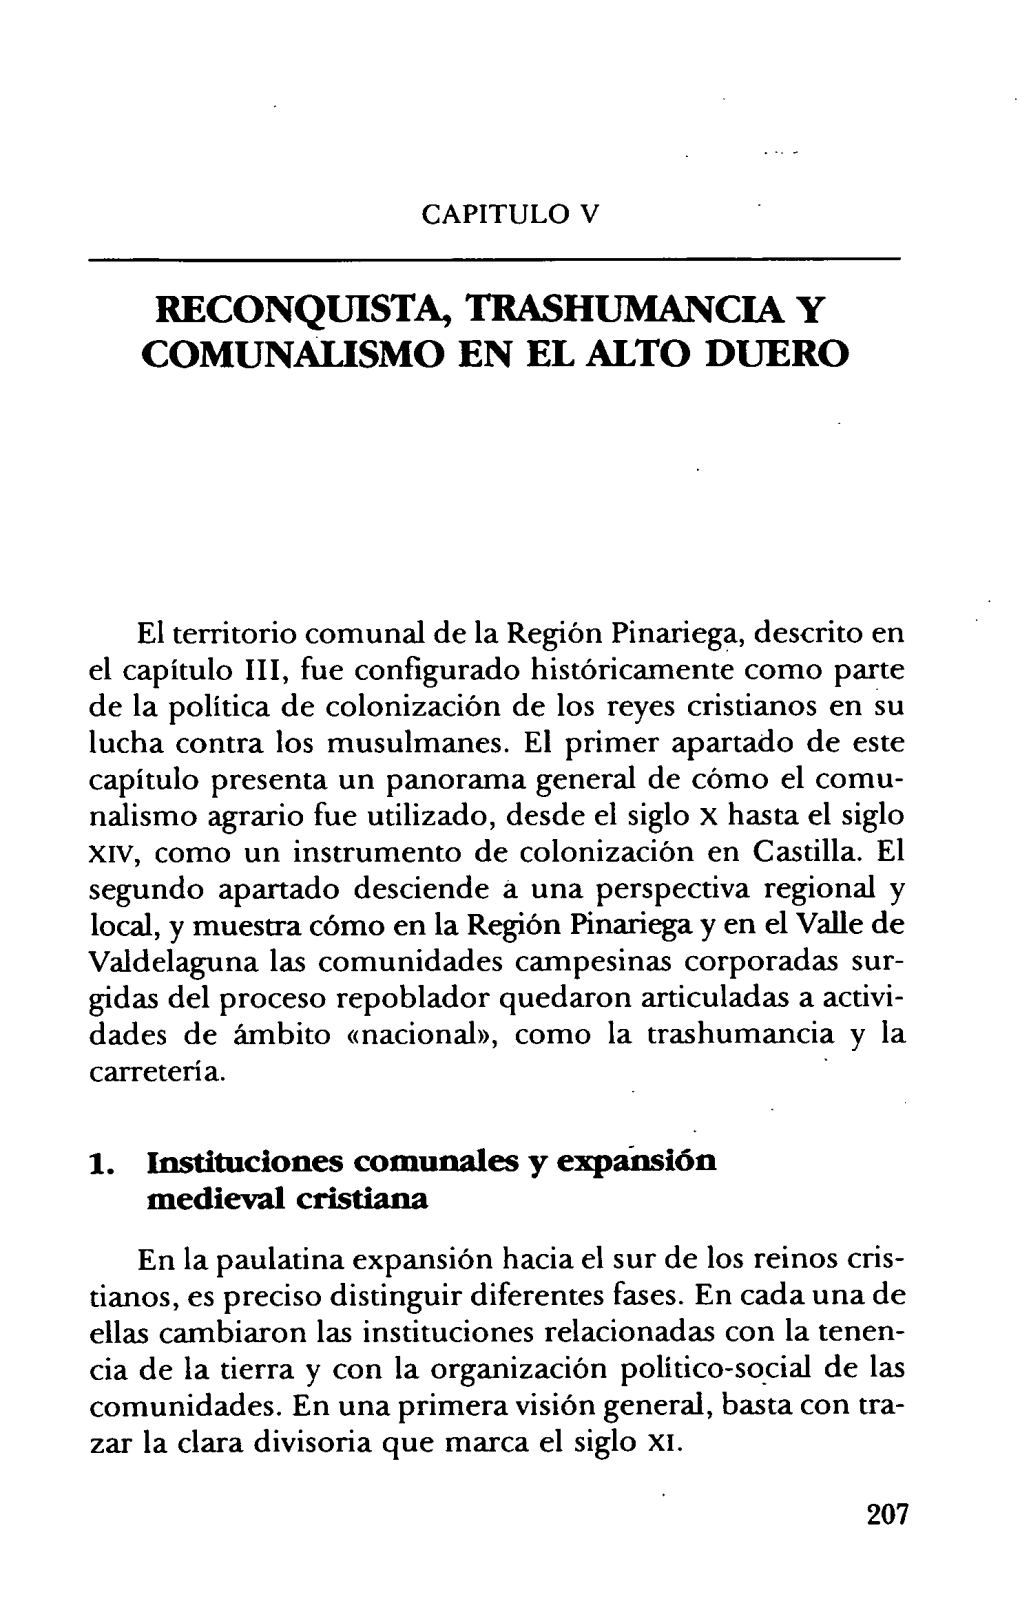 V. Reconquista, Trashumancia Y Comunalismo En El Alto Duero